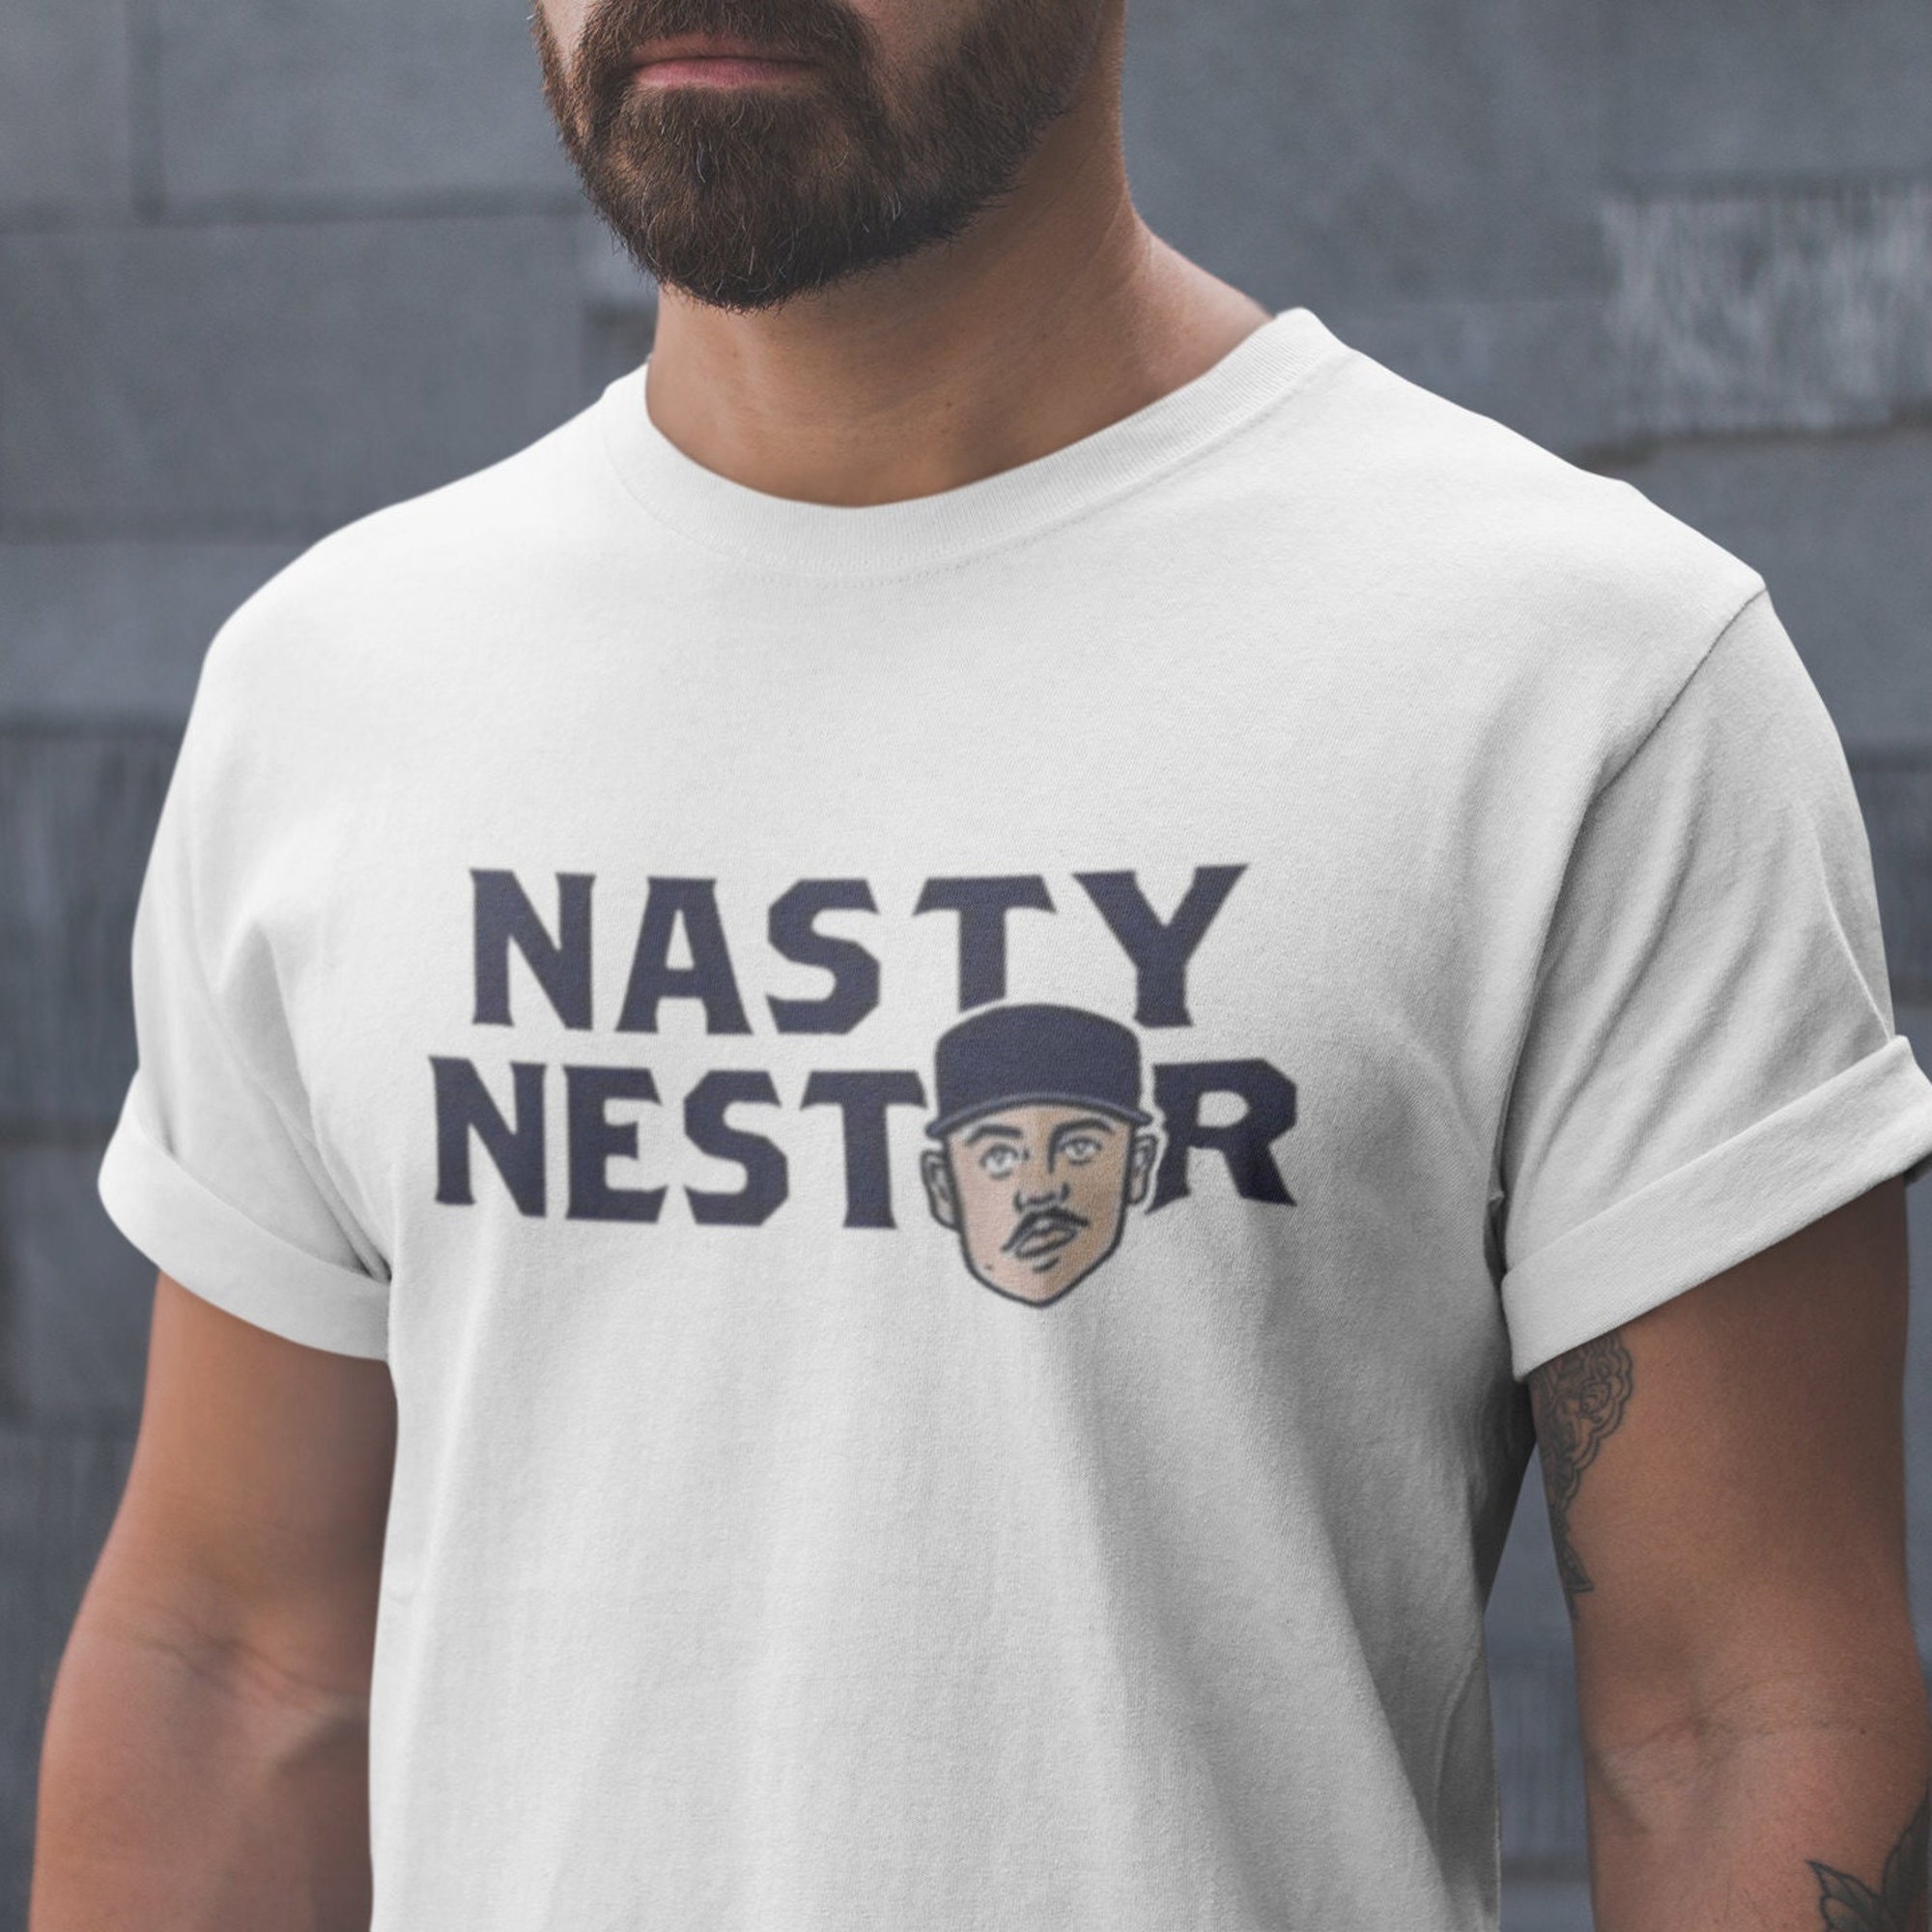 Nasty Nestor Shirt, New York Baseball